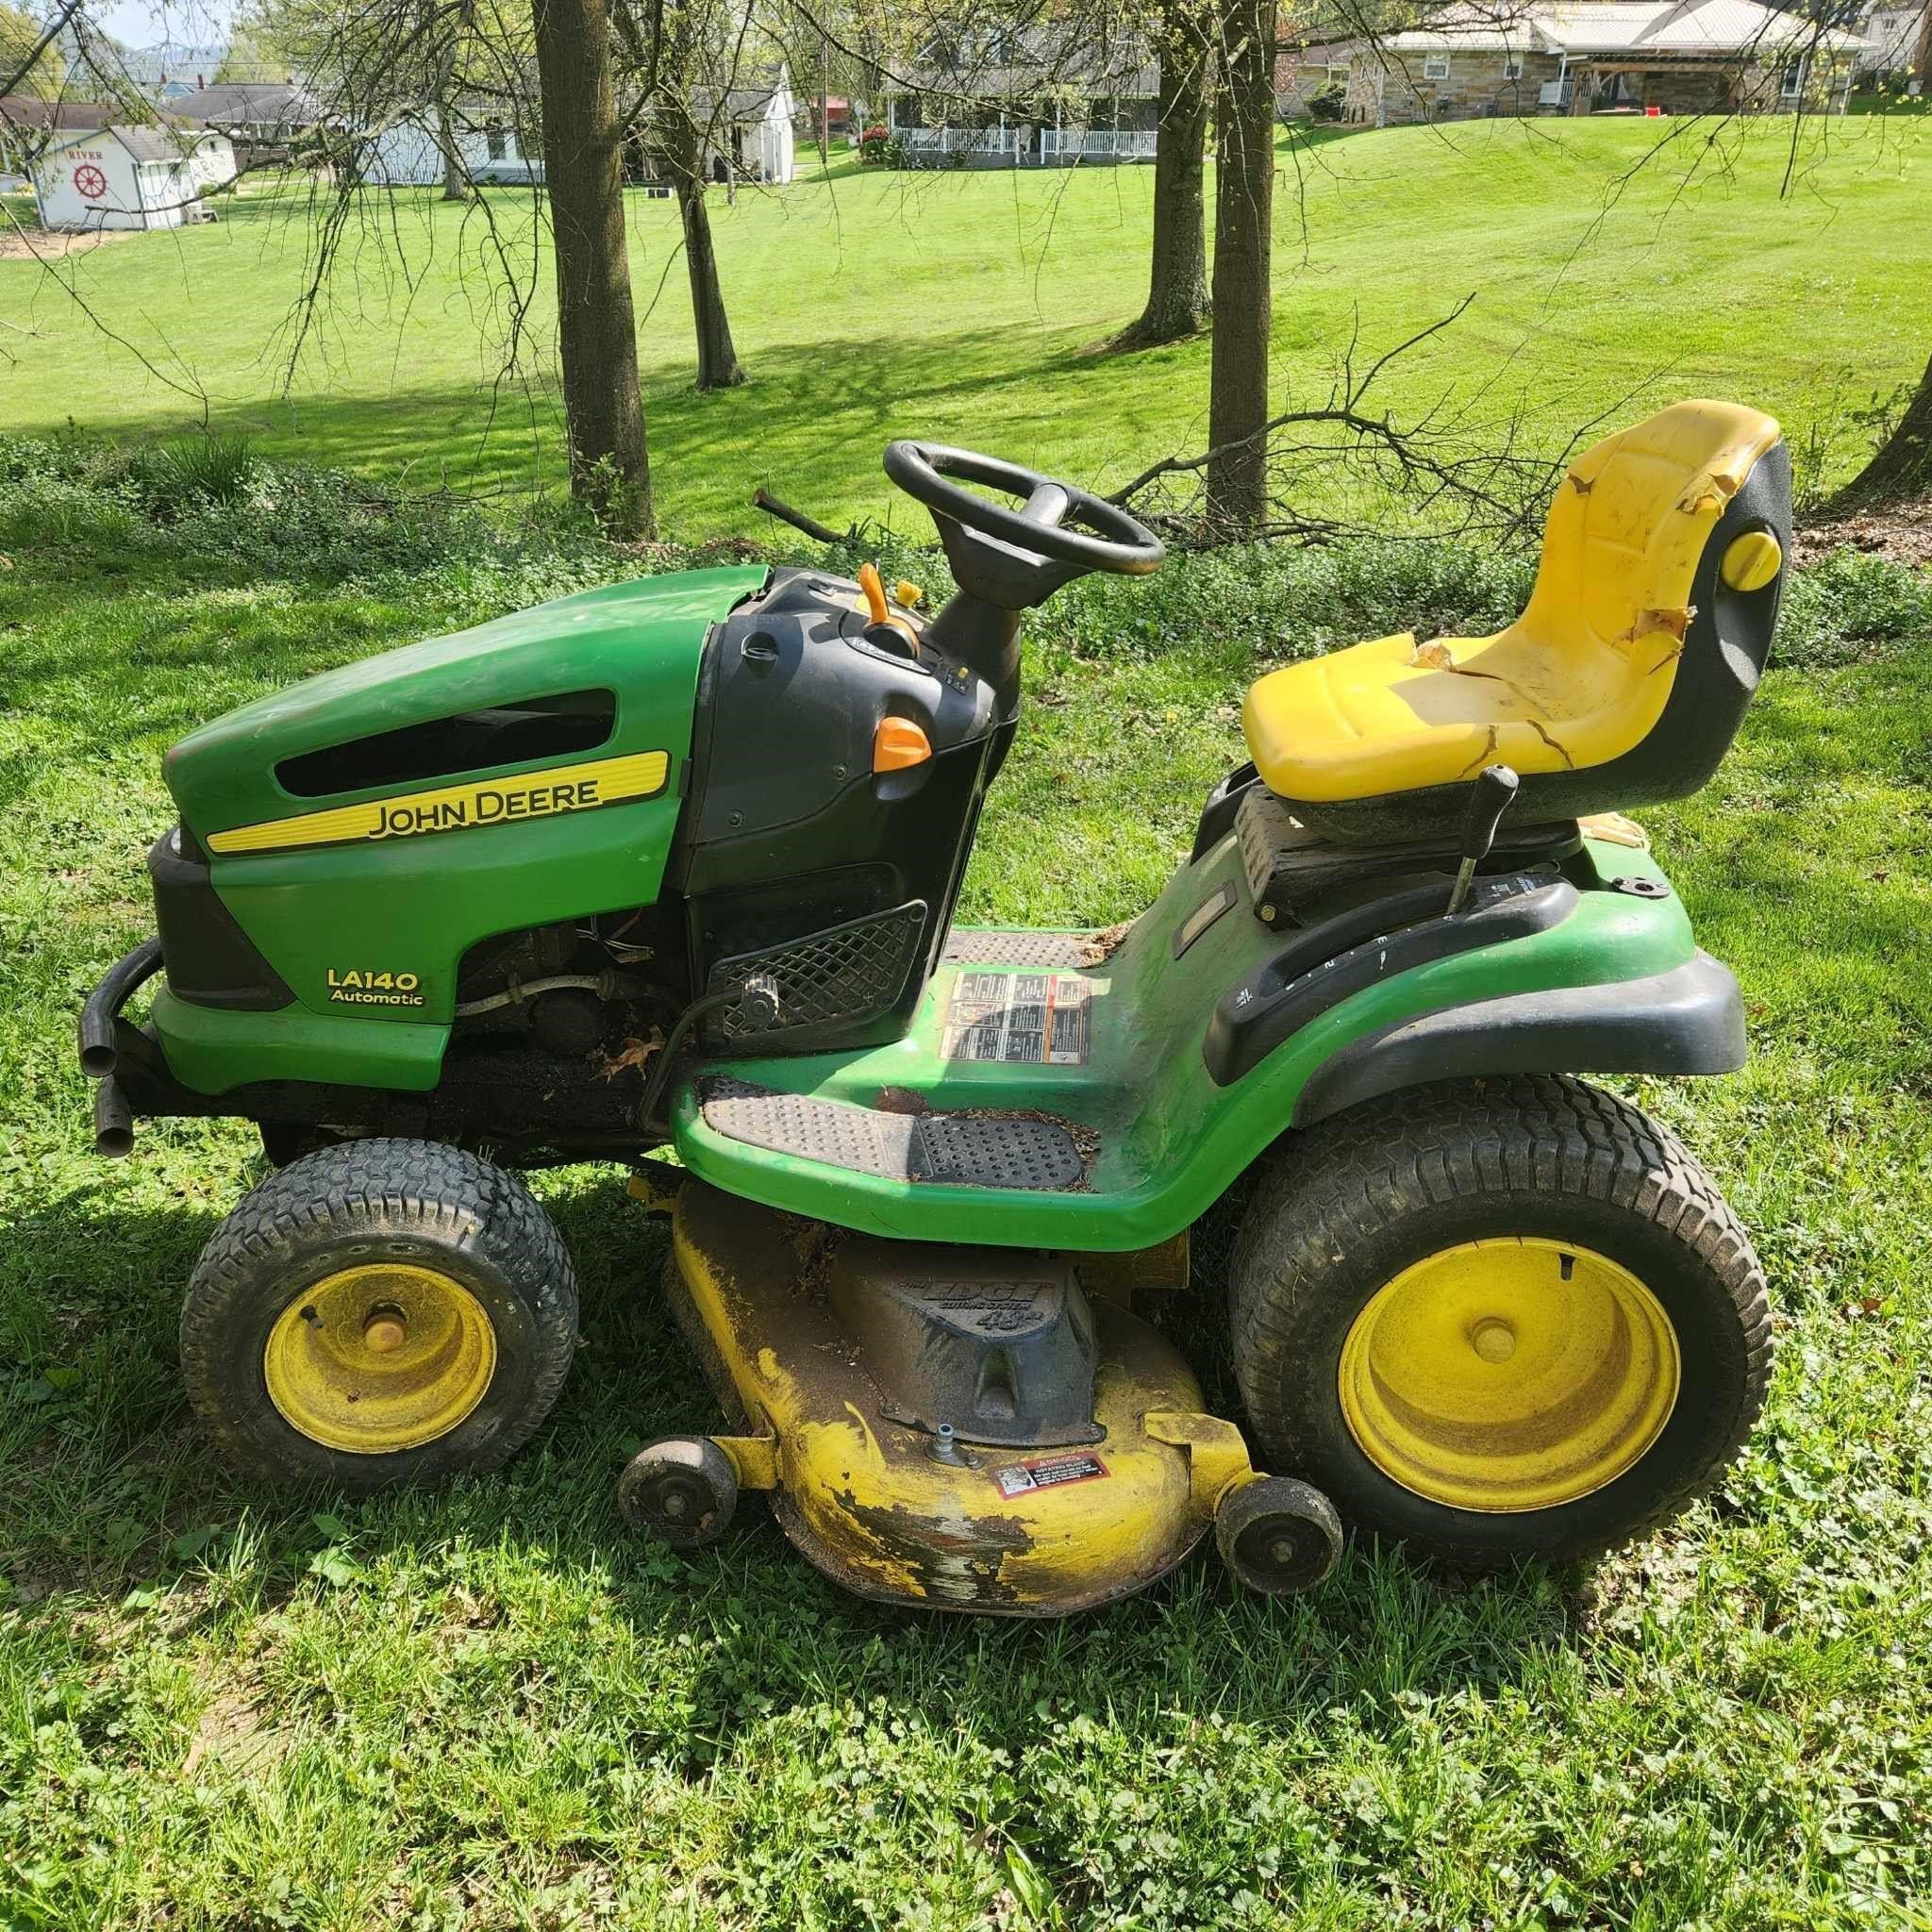 John Deere LA140 Lawn Mower 48" Cut